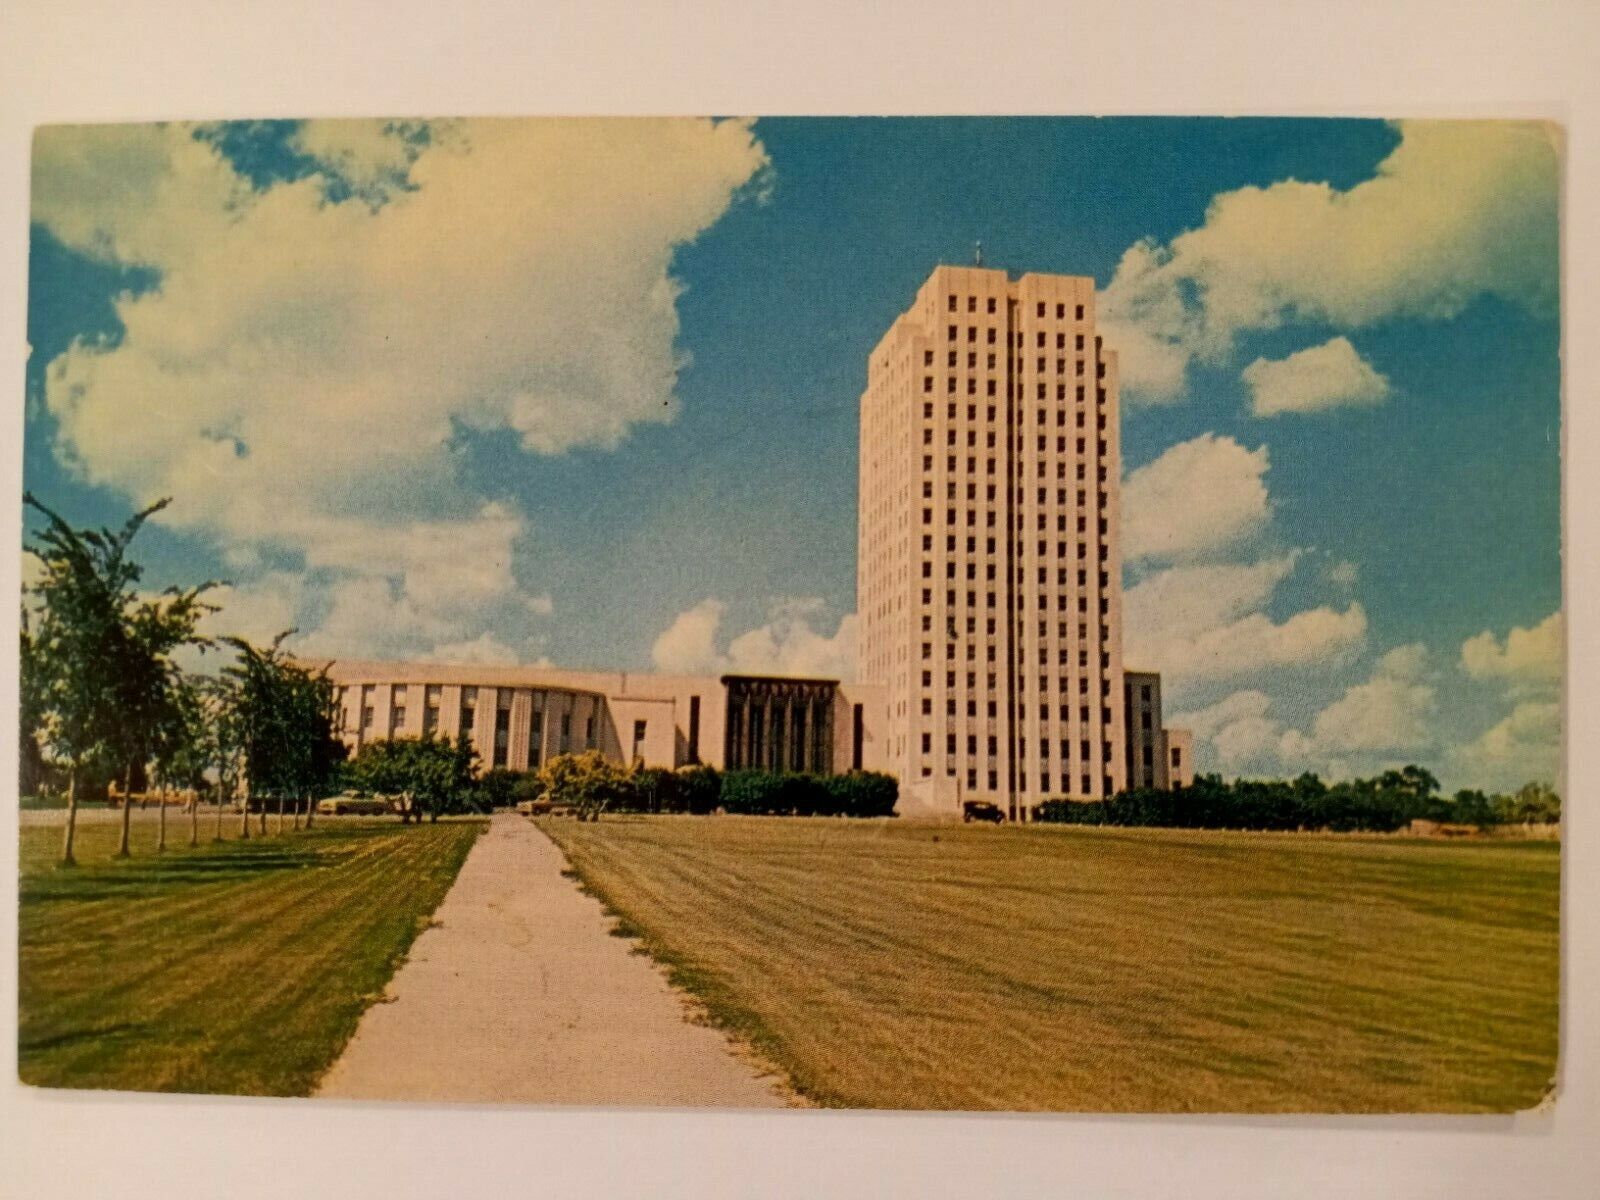 State Capitol, Bismarck, ND, vintage 1940s 1950s postcard postmarked 1957